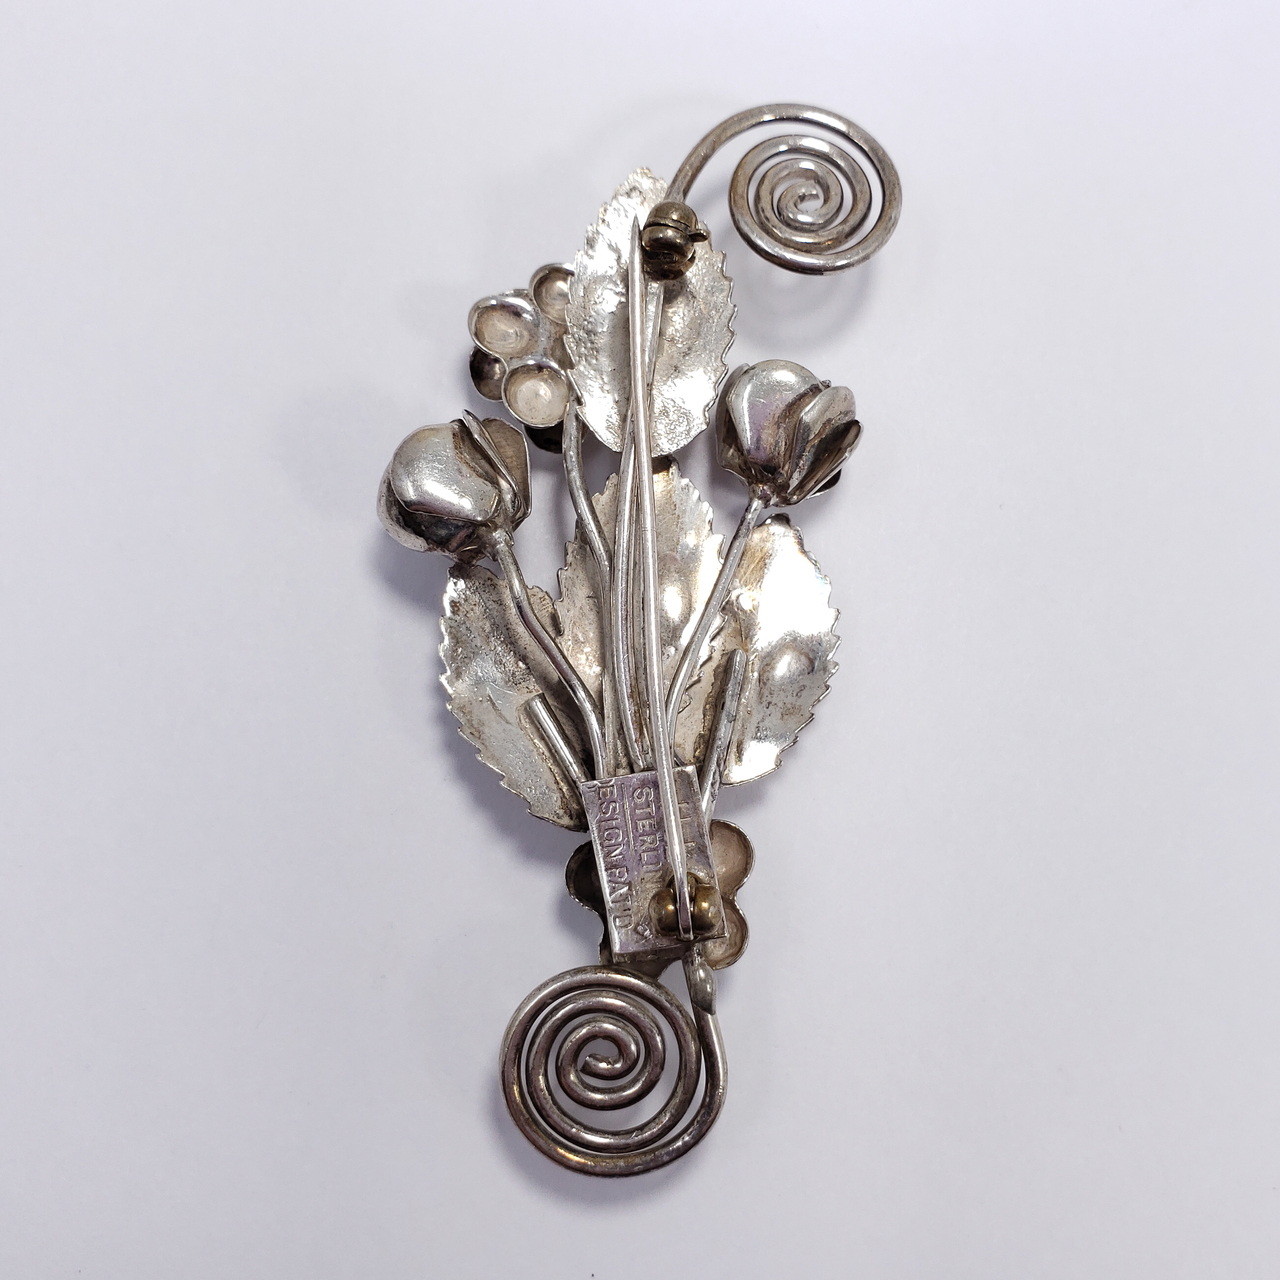 1950s Vintage Costume Jewelry Diamond Rhinestone Leaf/flower Form